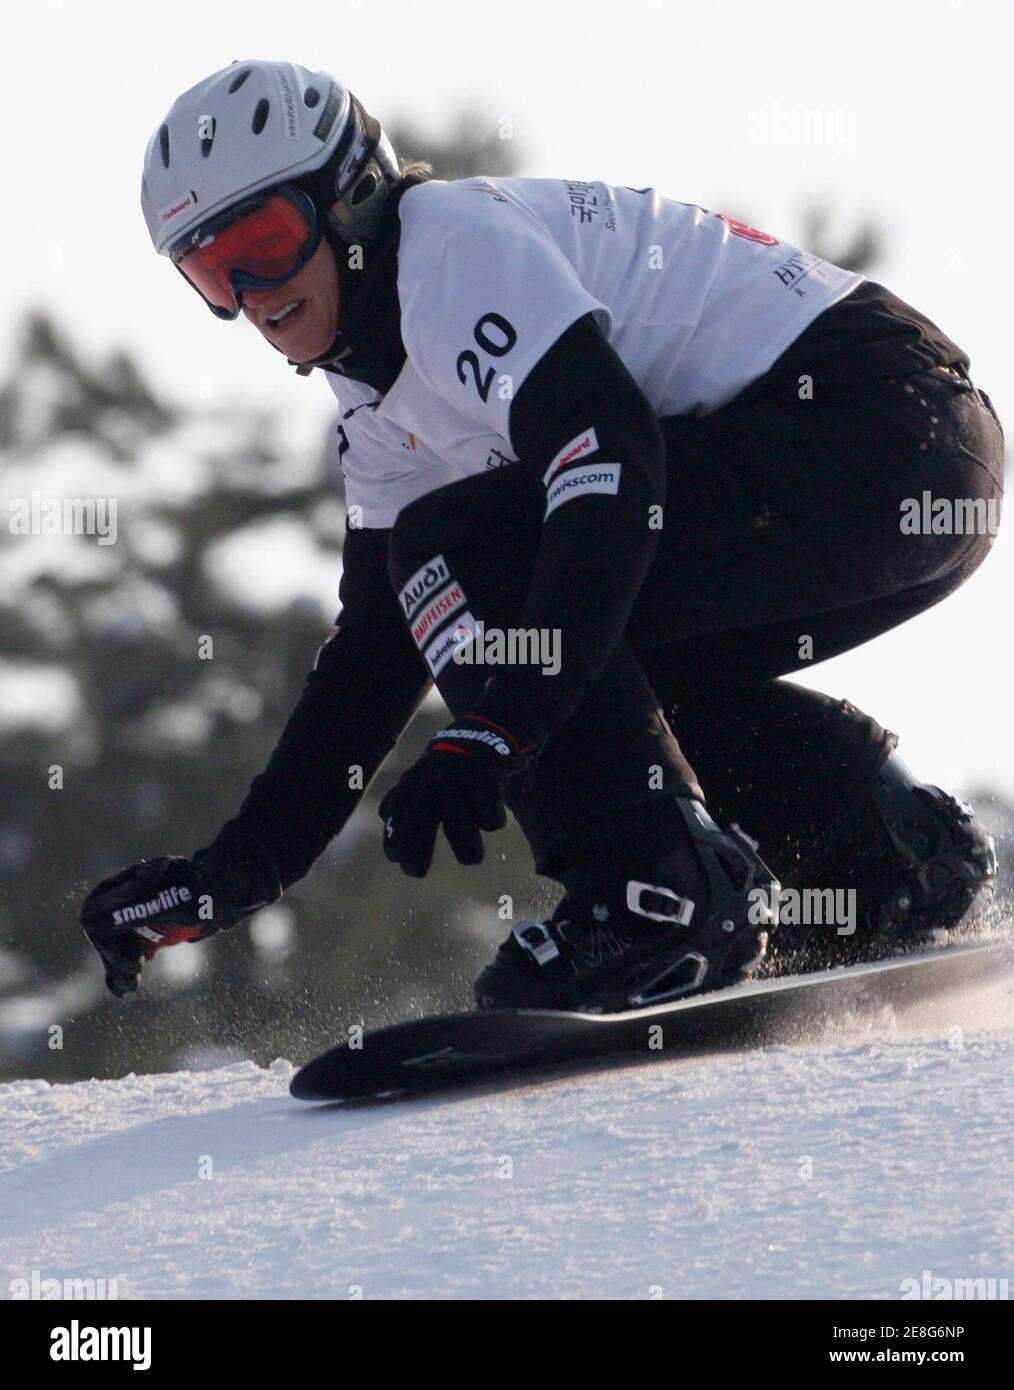 Olivia Nobs, de Suisse, est en compétition lors de la qualification féminine de snowboard lors des Championnats du monde de snowboard FIS à Hoengseong, à l'est de Séoul, le 17 janvier 2009. REUTERS/JO Yong-Hak (CORÉE DU SUD) Banque D'Images